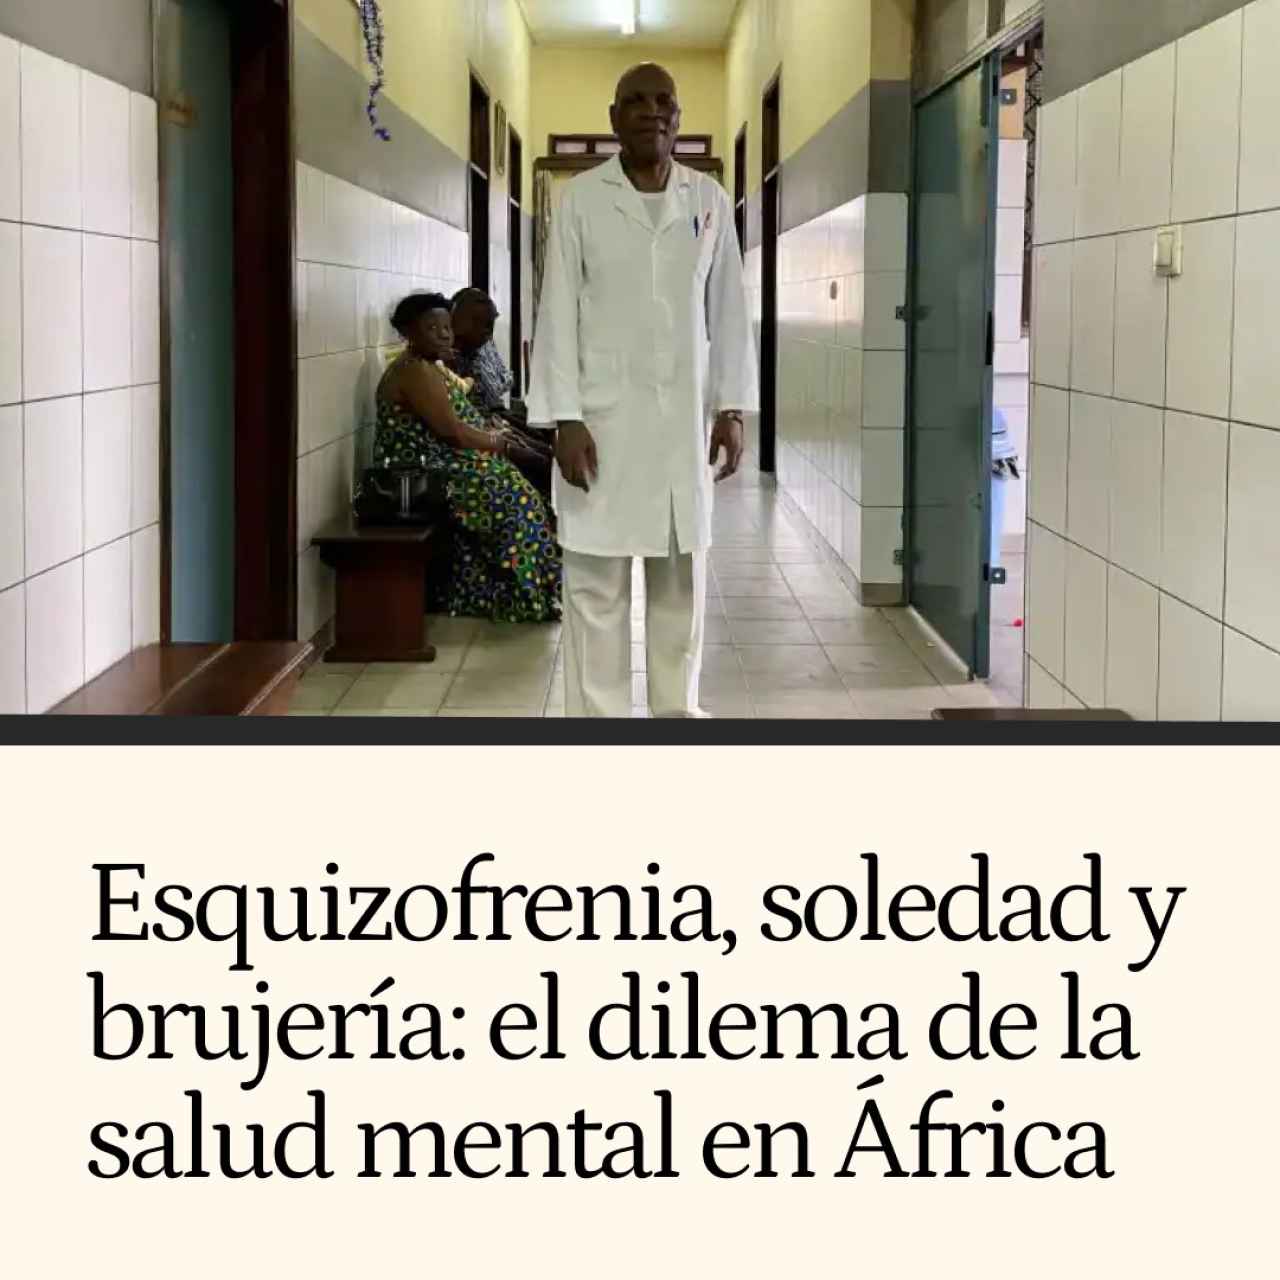 Brujería, soledad y esquizofrenia: el dilema de la salud mental en África